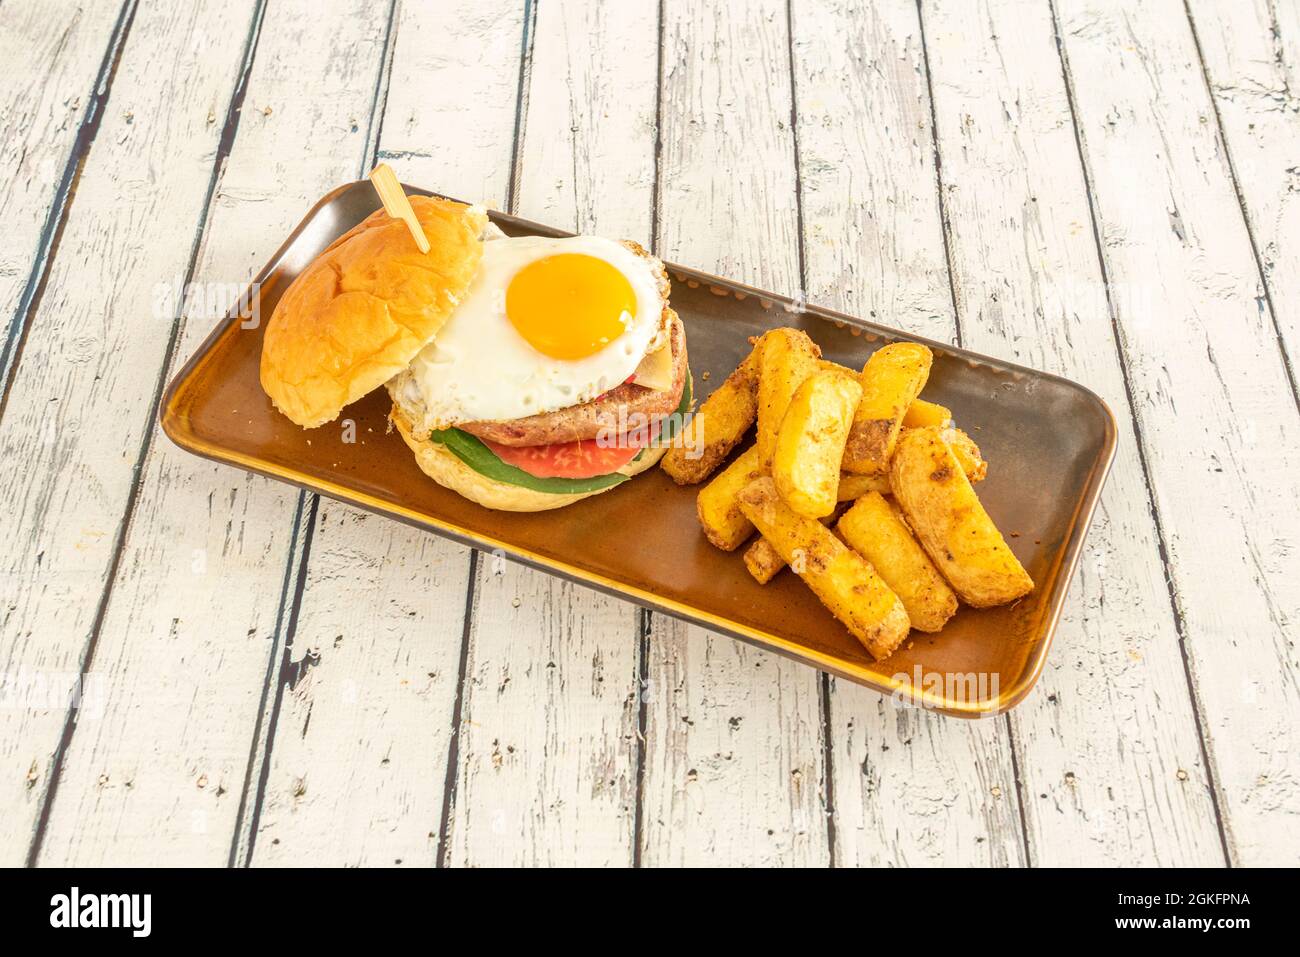 Appetitlich hausgemachter Burger mit einem Spiegelei mit glänzendem Eigelb und einer Seite von Deluxe-Pommes mit Haut Stockfoto